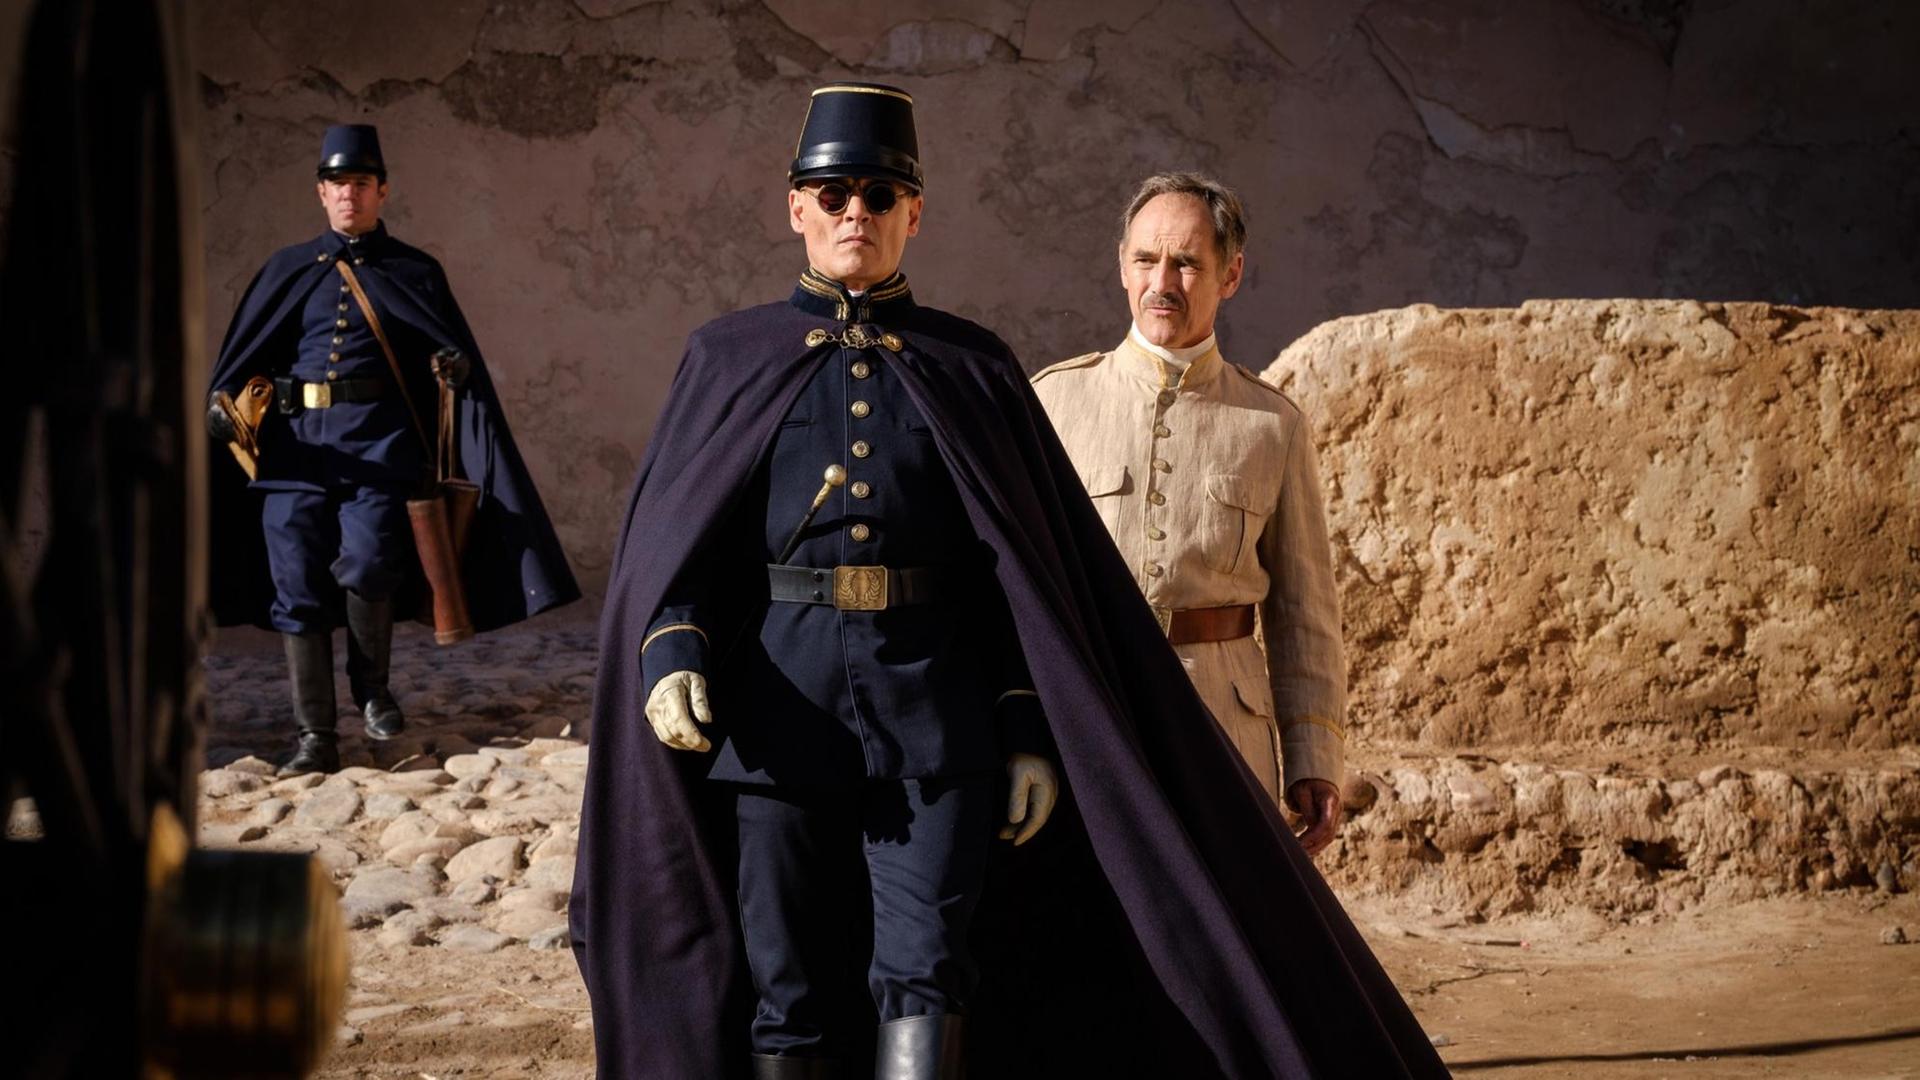 Szene aus dem Film "Waiting for the Barbarians", in dem Johnny Depp einen erbarmungslosen Militär spielt.